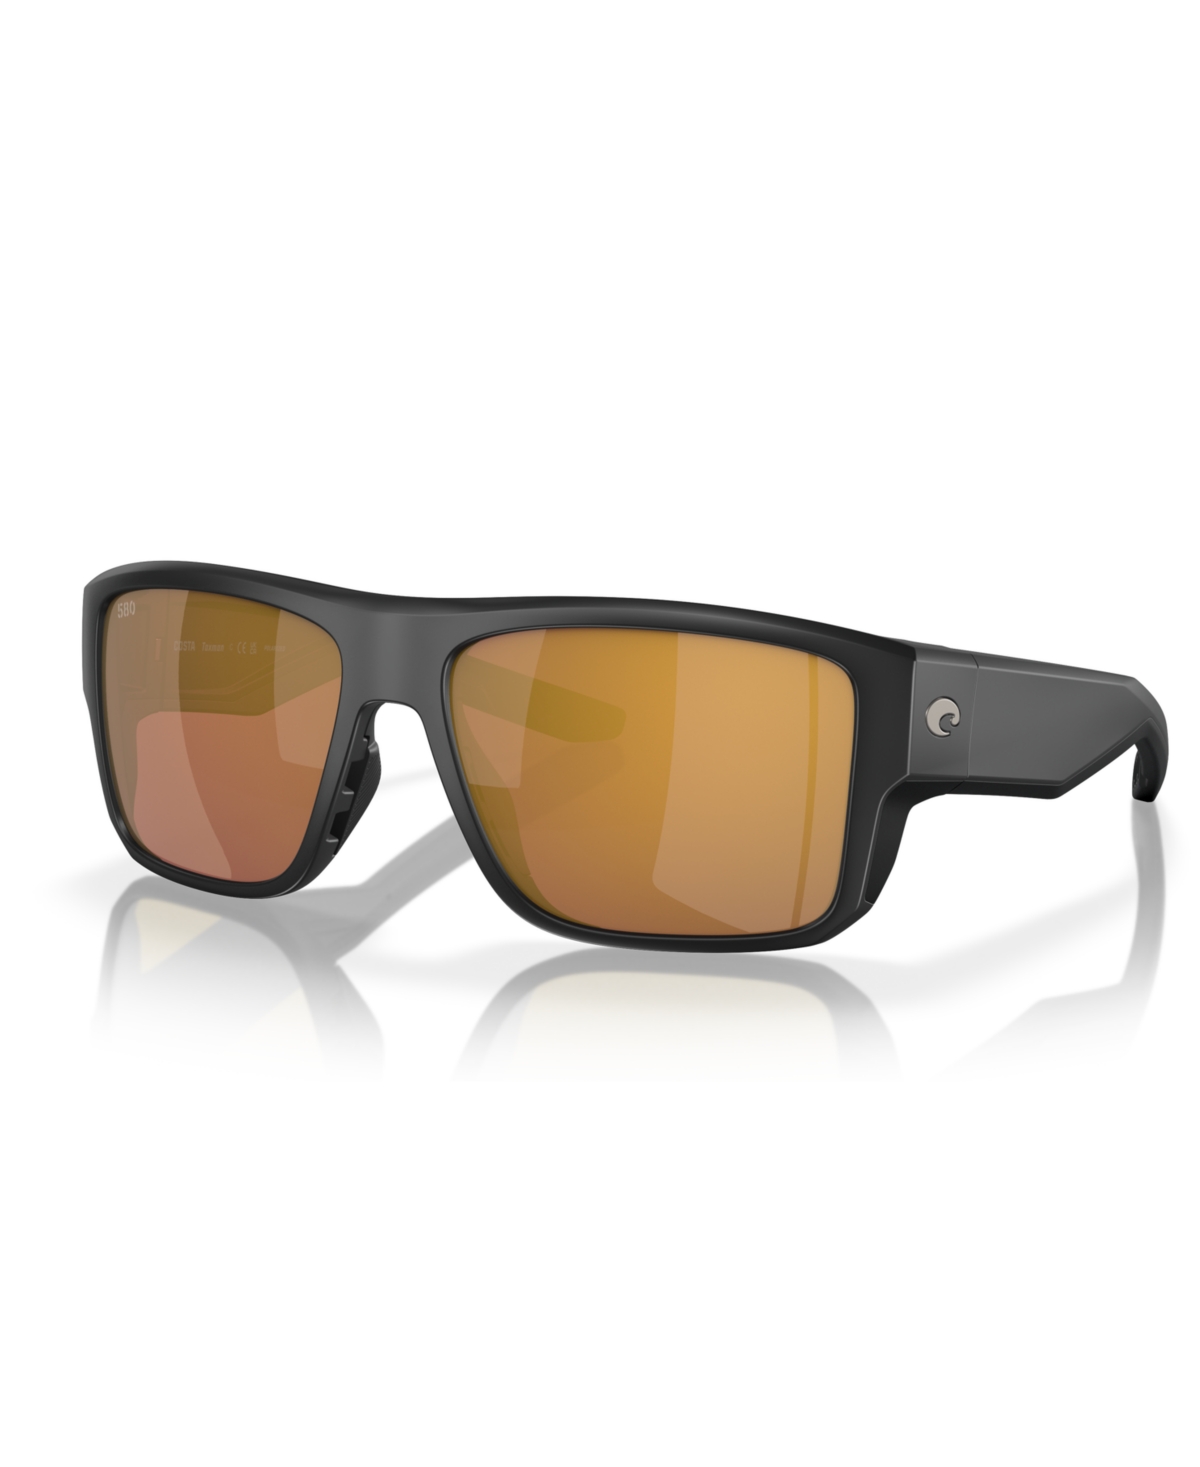 Costa Del Mar Men's Polarized Sunglasses, Taxman 6s9116 In Matte Black,gold